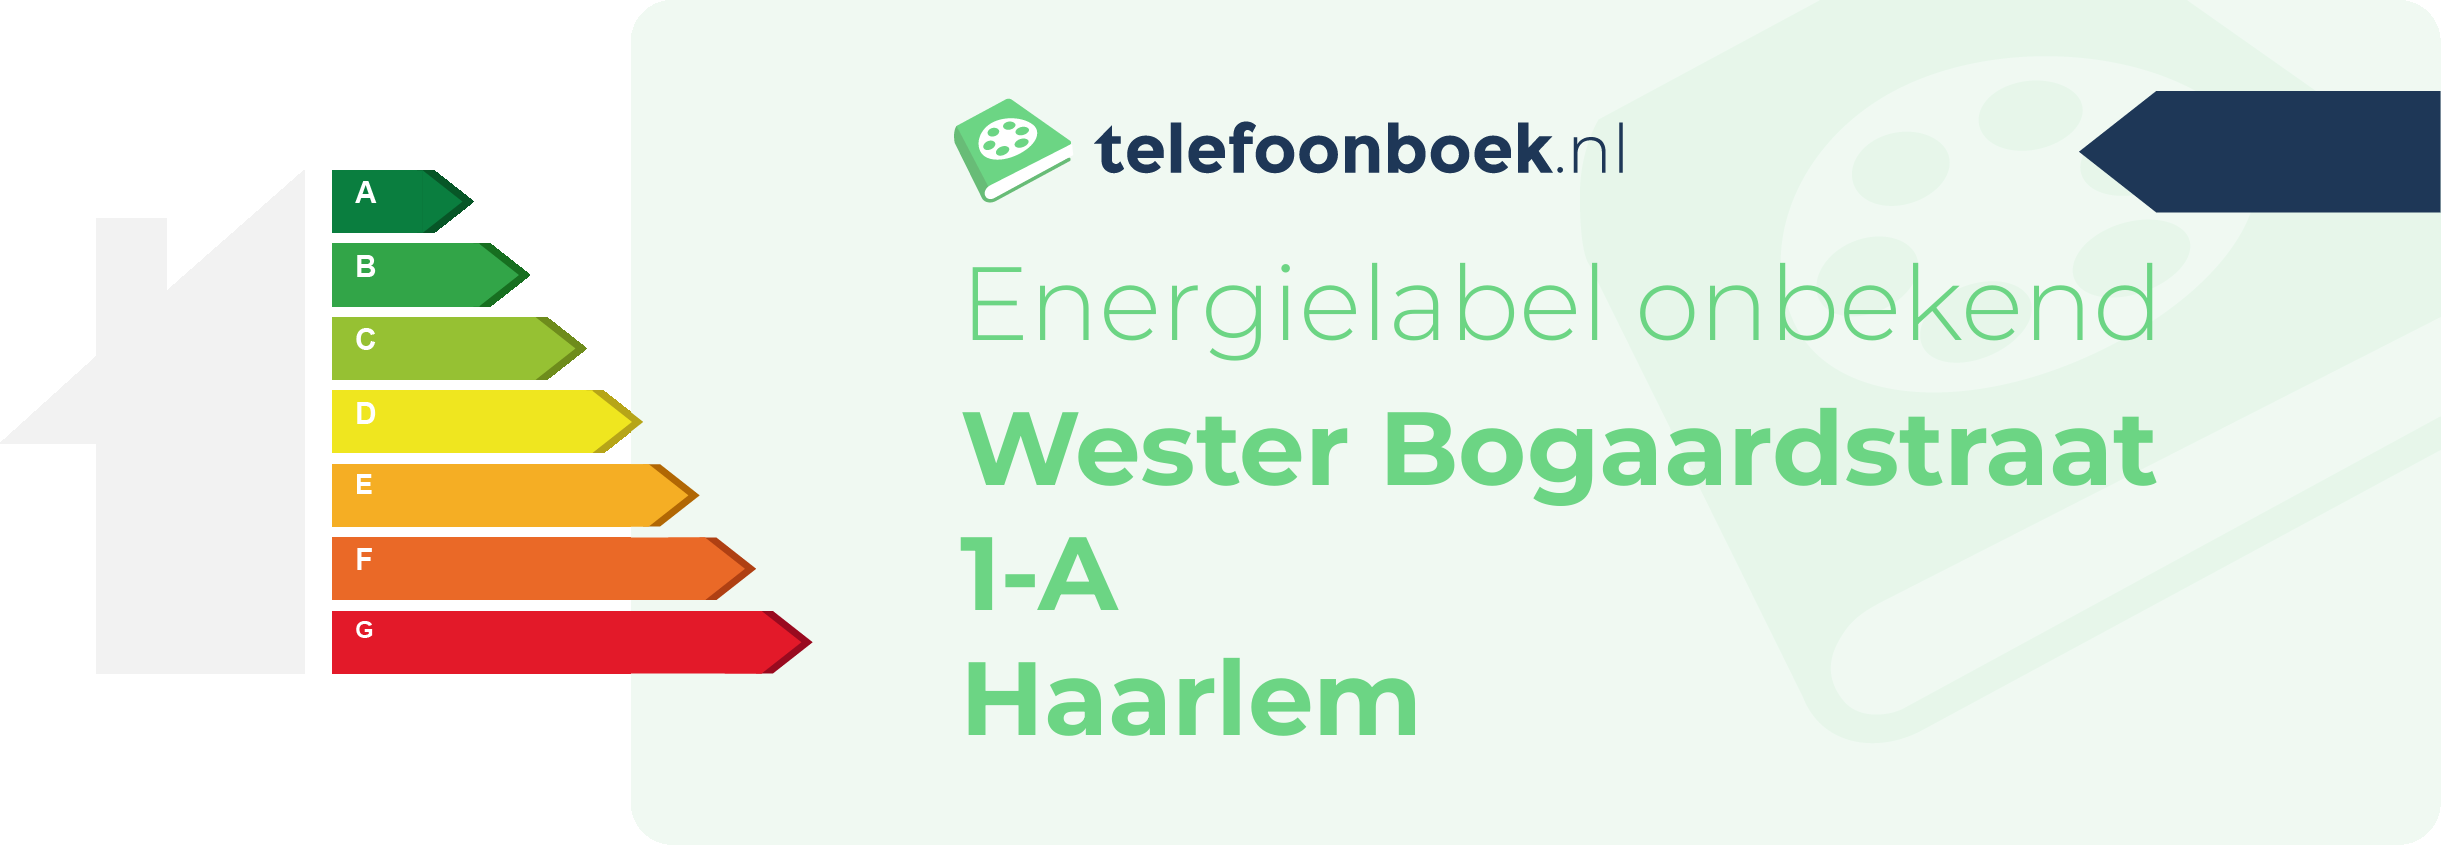 Energielabel Wester Bogaardstraat 1-A Haarlem